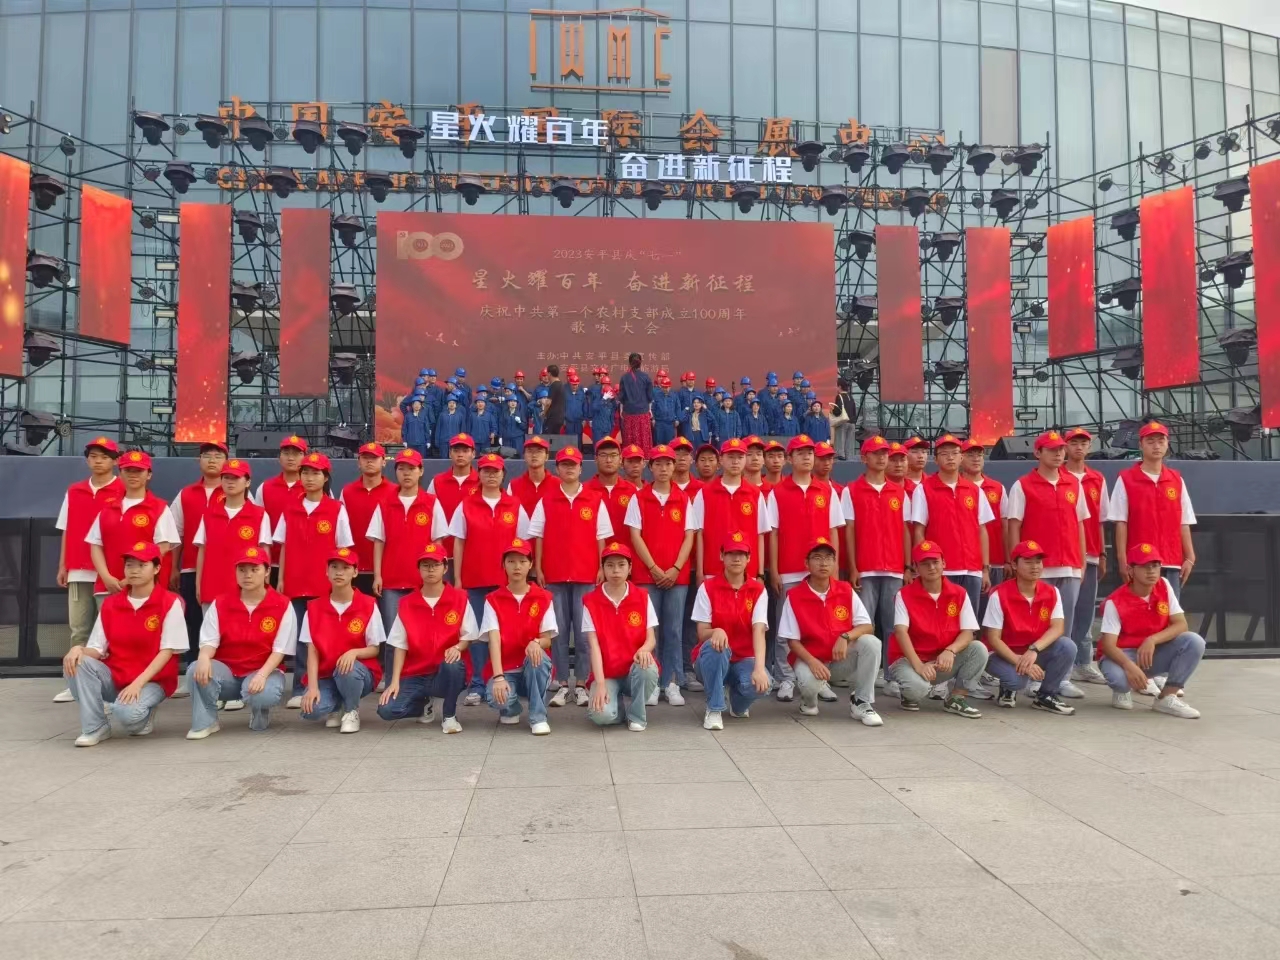 我校在安平县庆祝中共第一个农村支部成立100周年歌咏大会活动中志愿服务